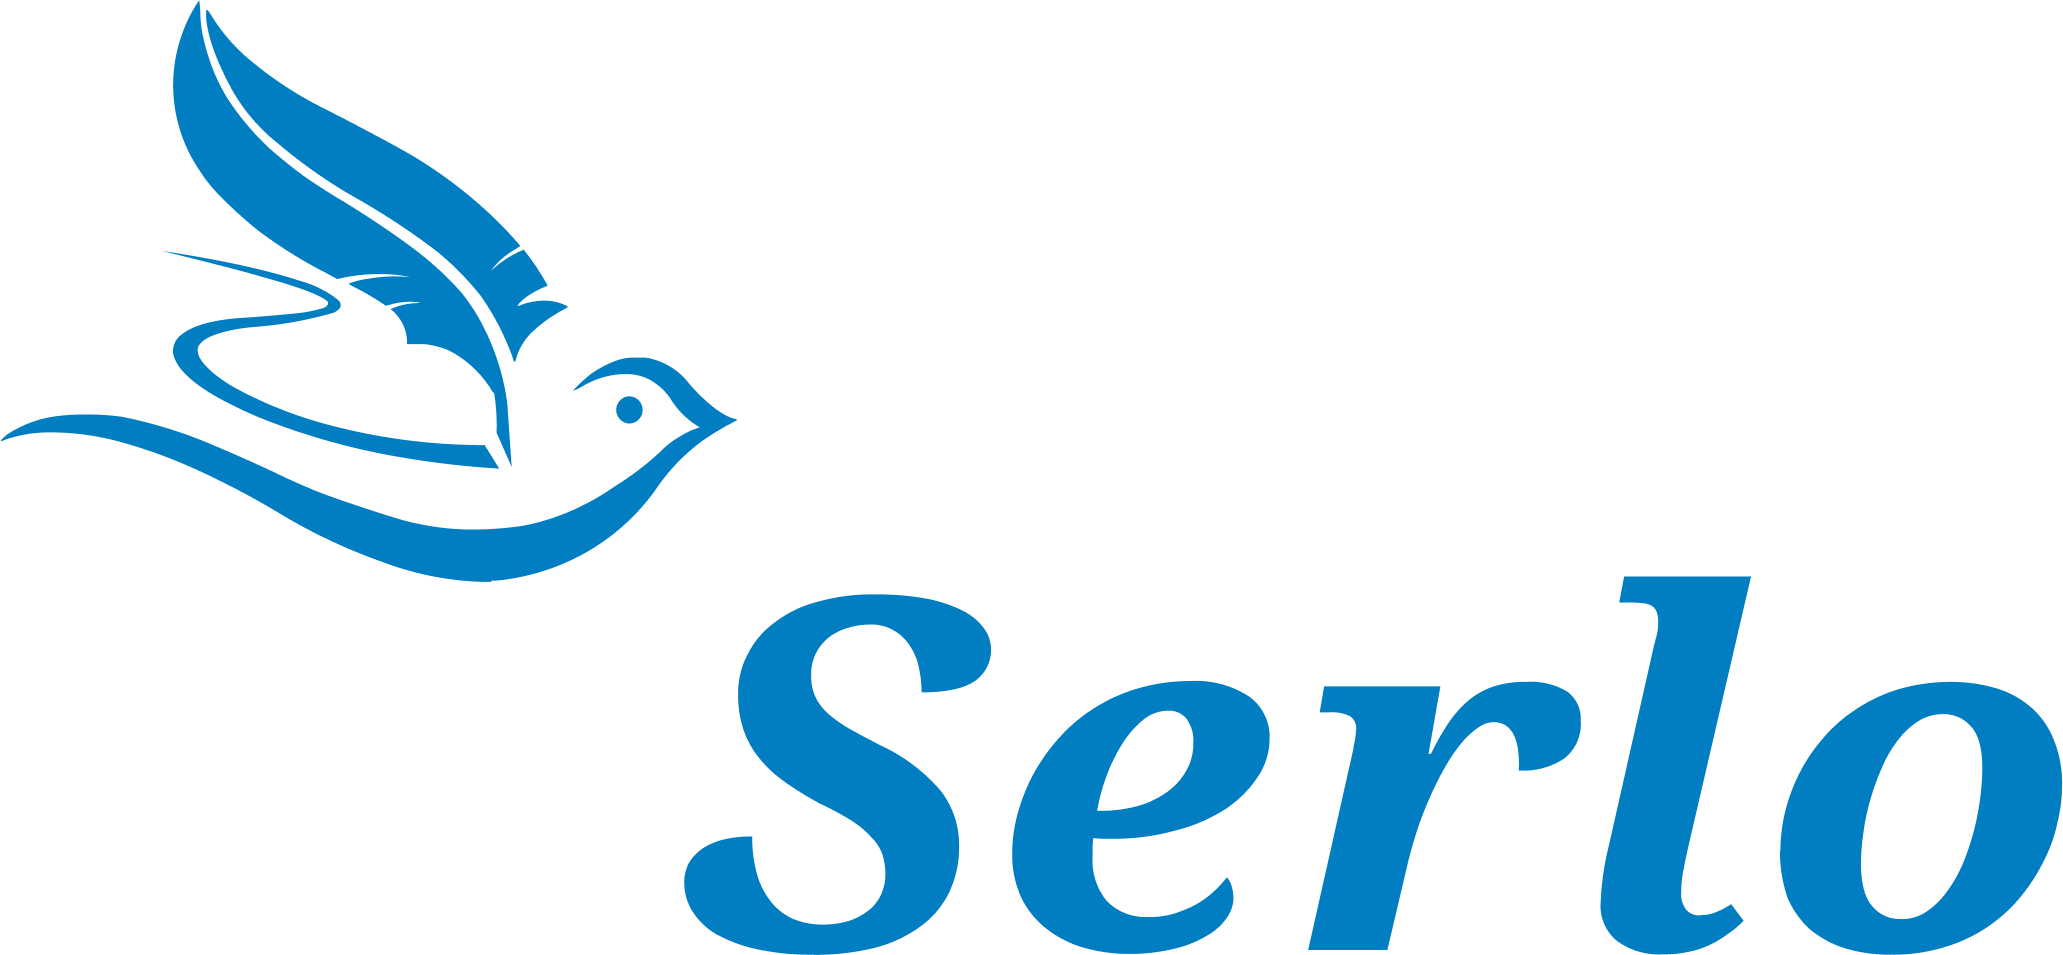 Serlo Logo, Serlo-Logo, Serlologo, Logo, Serlo Education Logo, serlo.org Logo